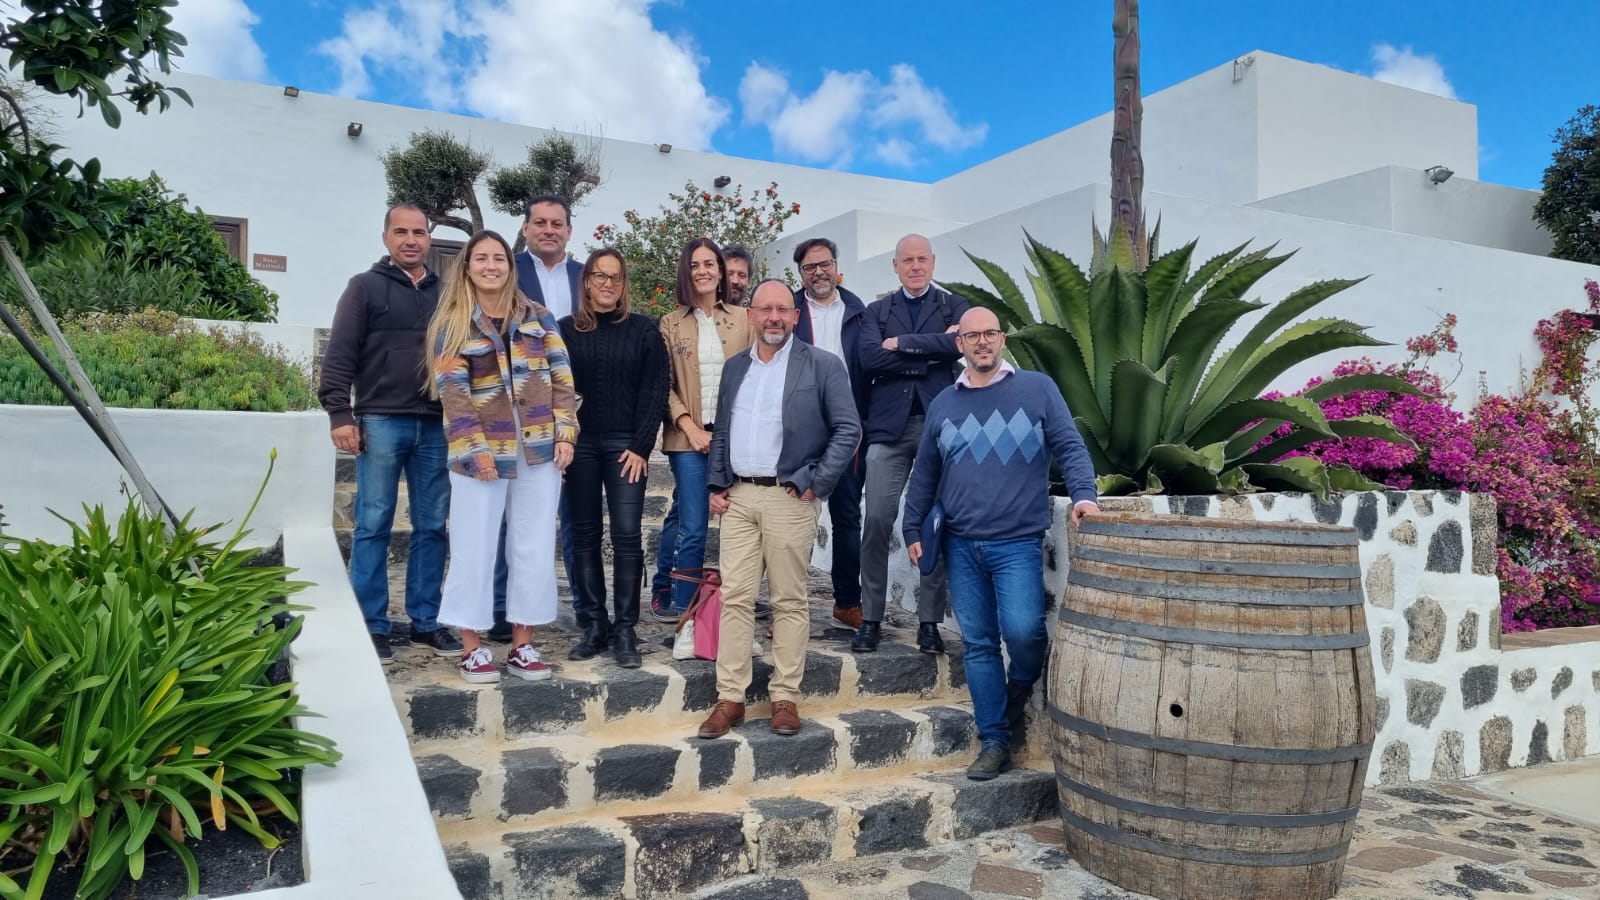 El Clúster de Enoturismo de Canarias mantiene su propósito: fortalecer el turismo enológico en el archipiélago